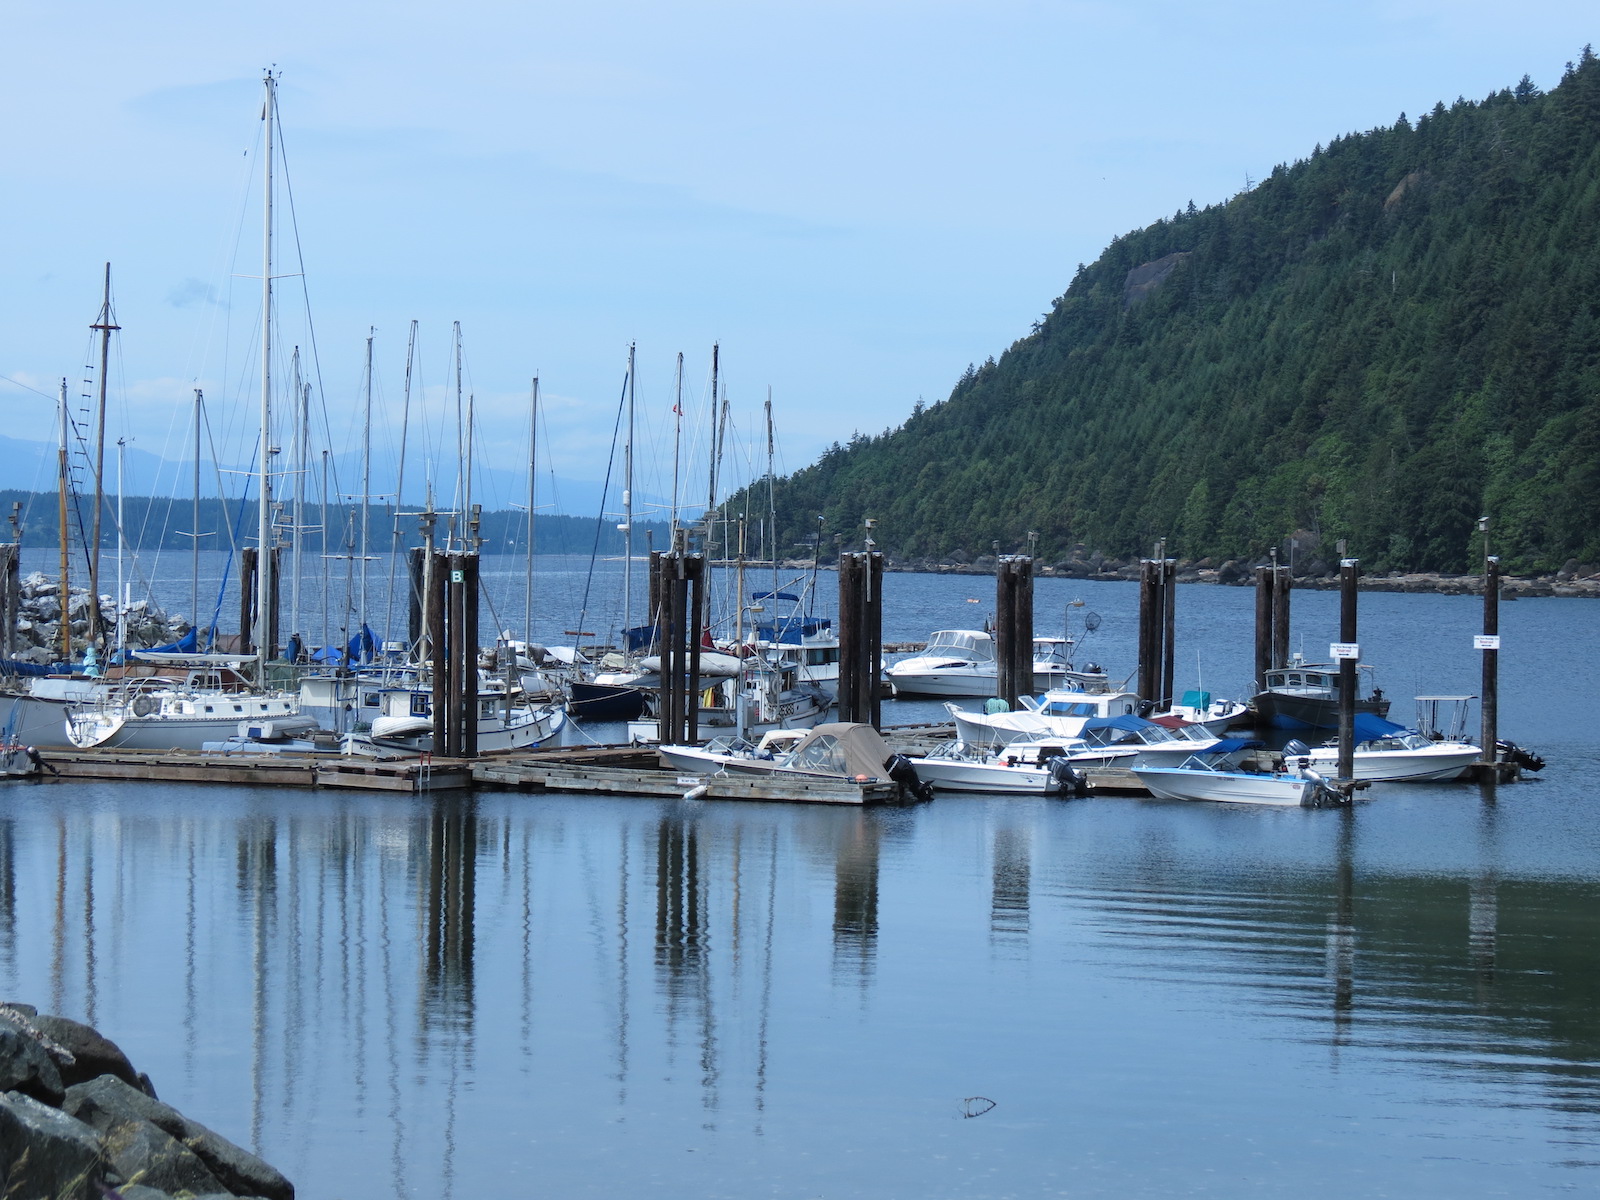 Hornby Island marina and resort, British Columbia